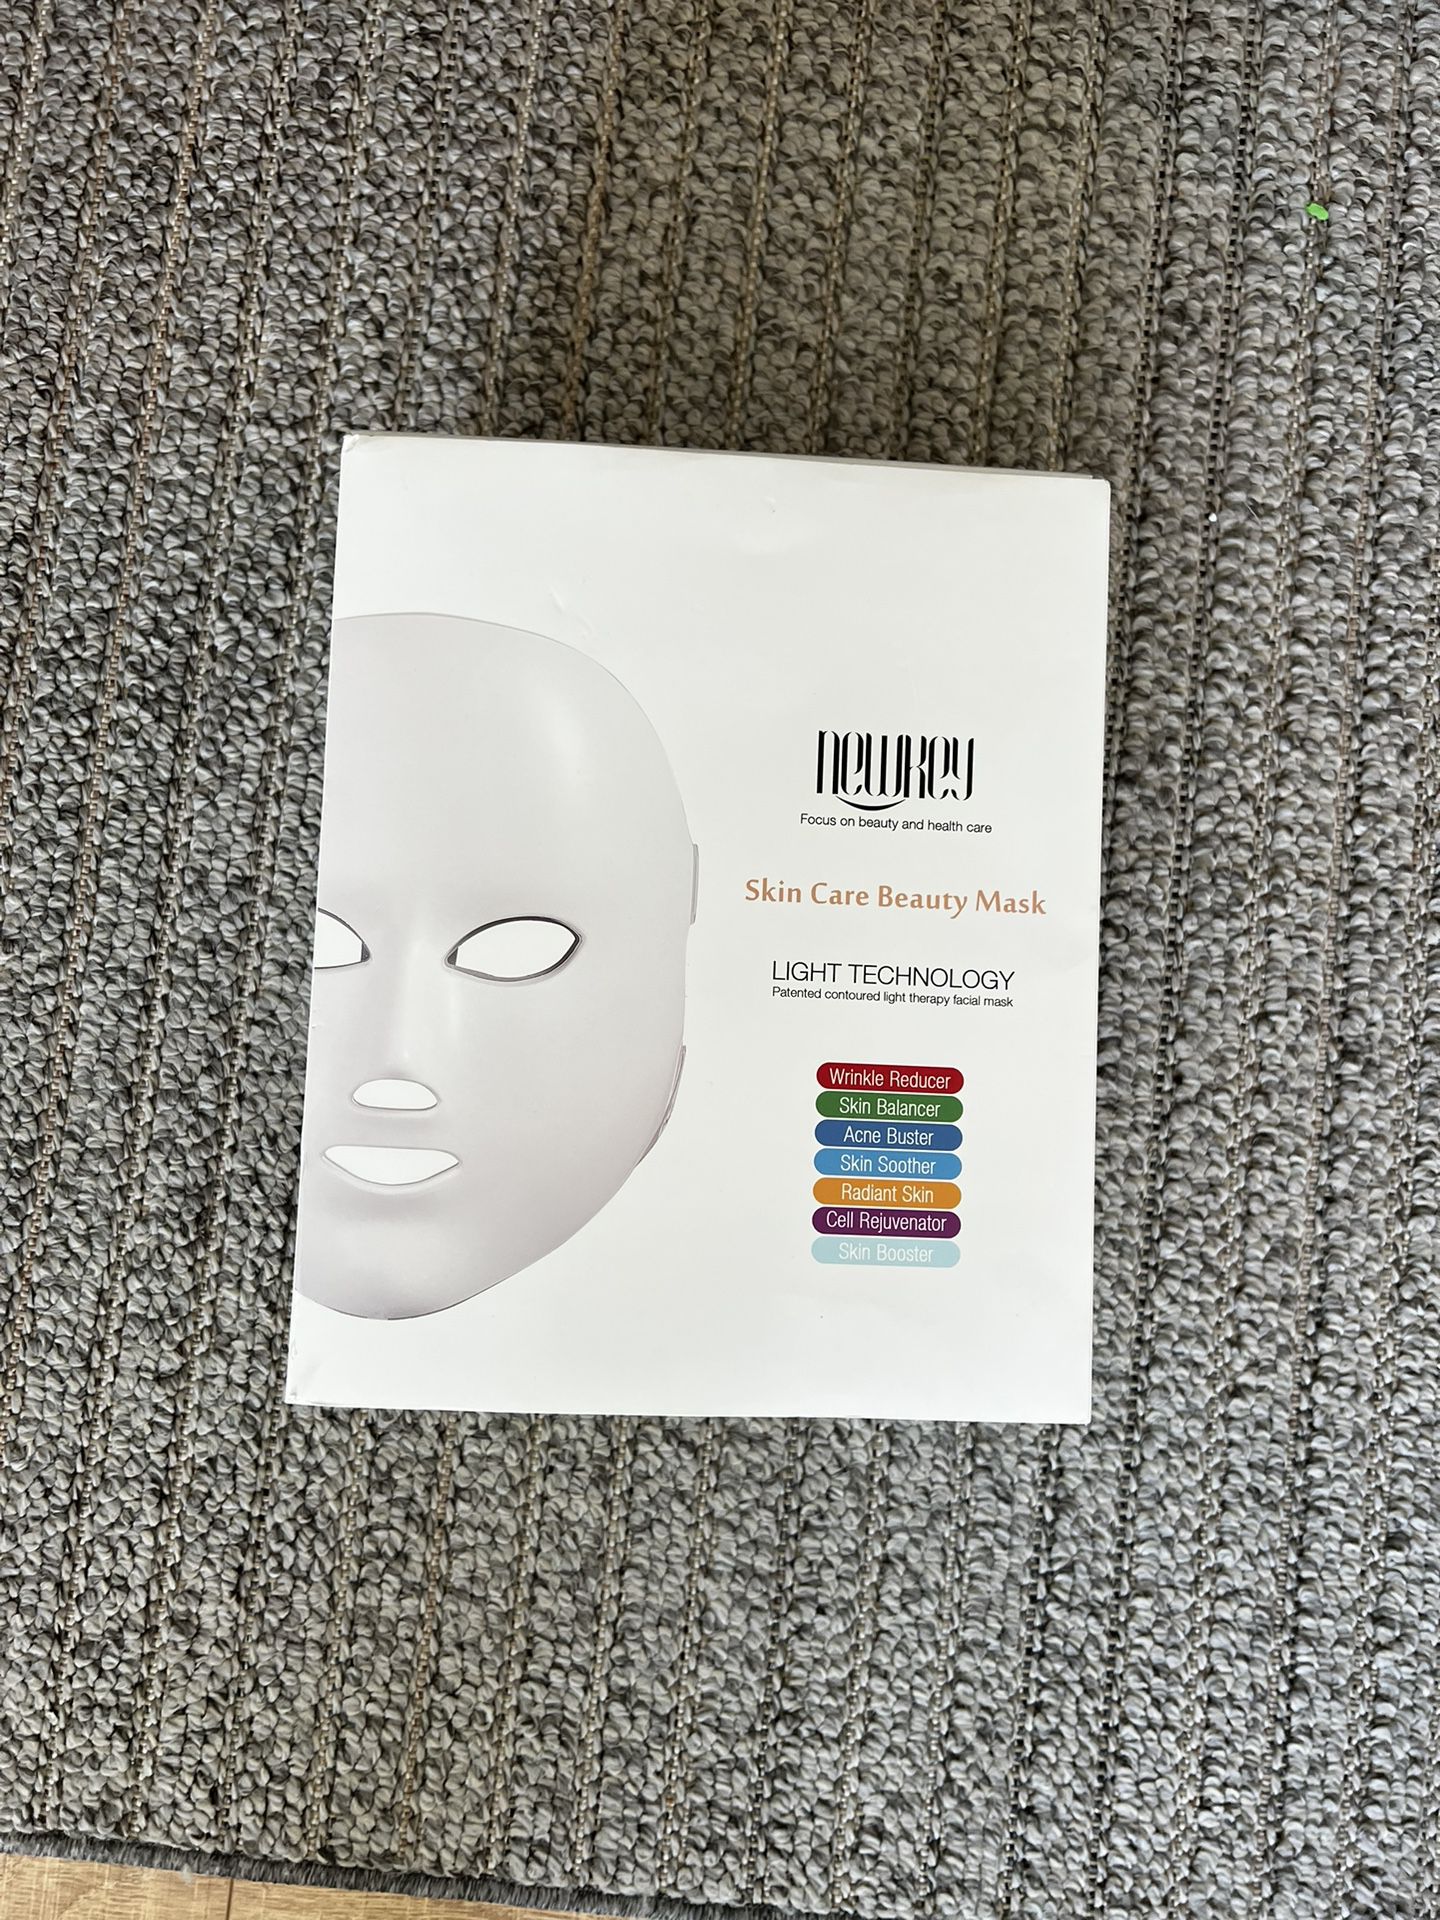 NEWKEY LED Skin Care Beauty Face Mask